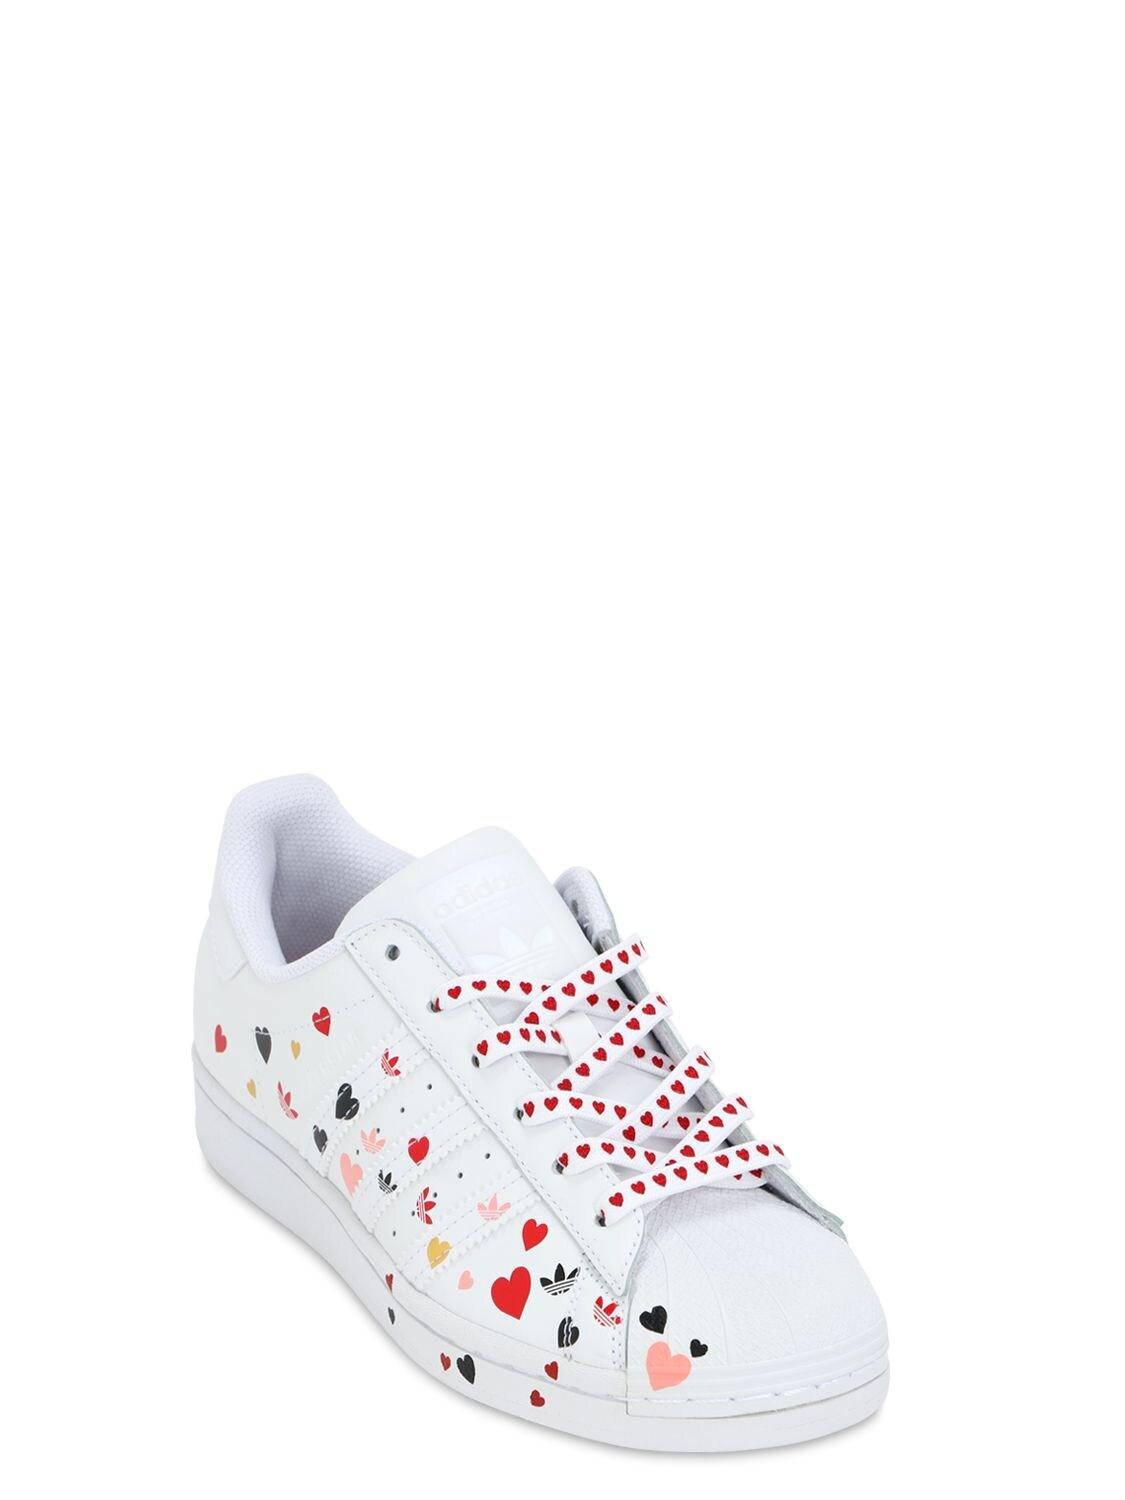 adidas Originals – Superstar – e Sneaker mit Herz-Muster in Weiß | Lyst DE